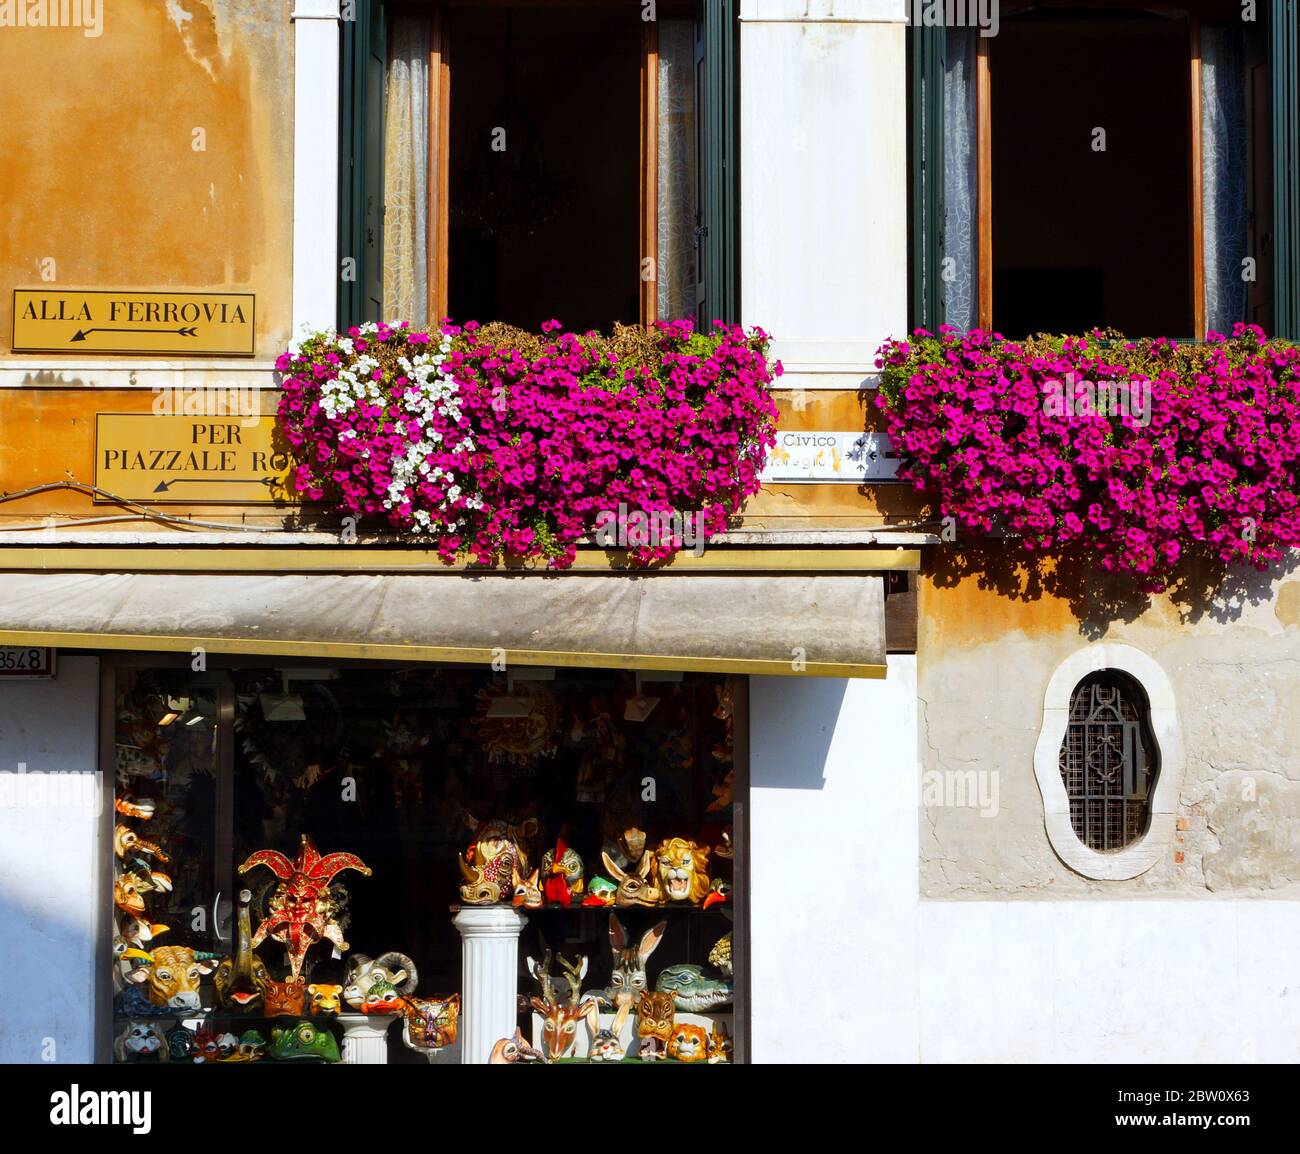 Venezia, meta da sogno in Italia, è attribuita ad una delle città più belle del mondo. Fiori colorati fioriscono vicino alle finestre. Foto Stock